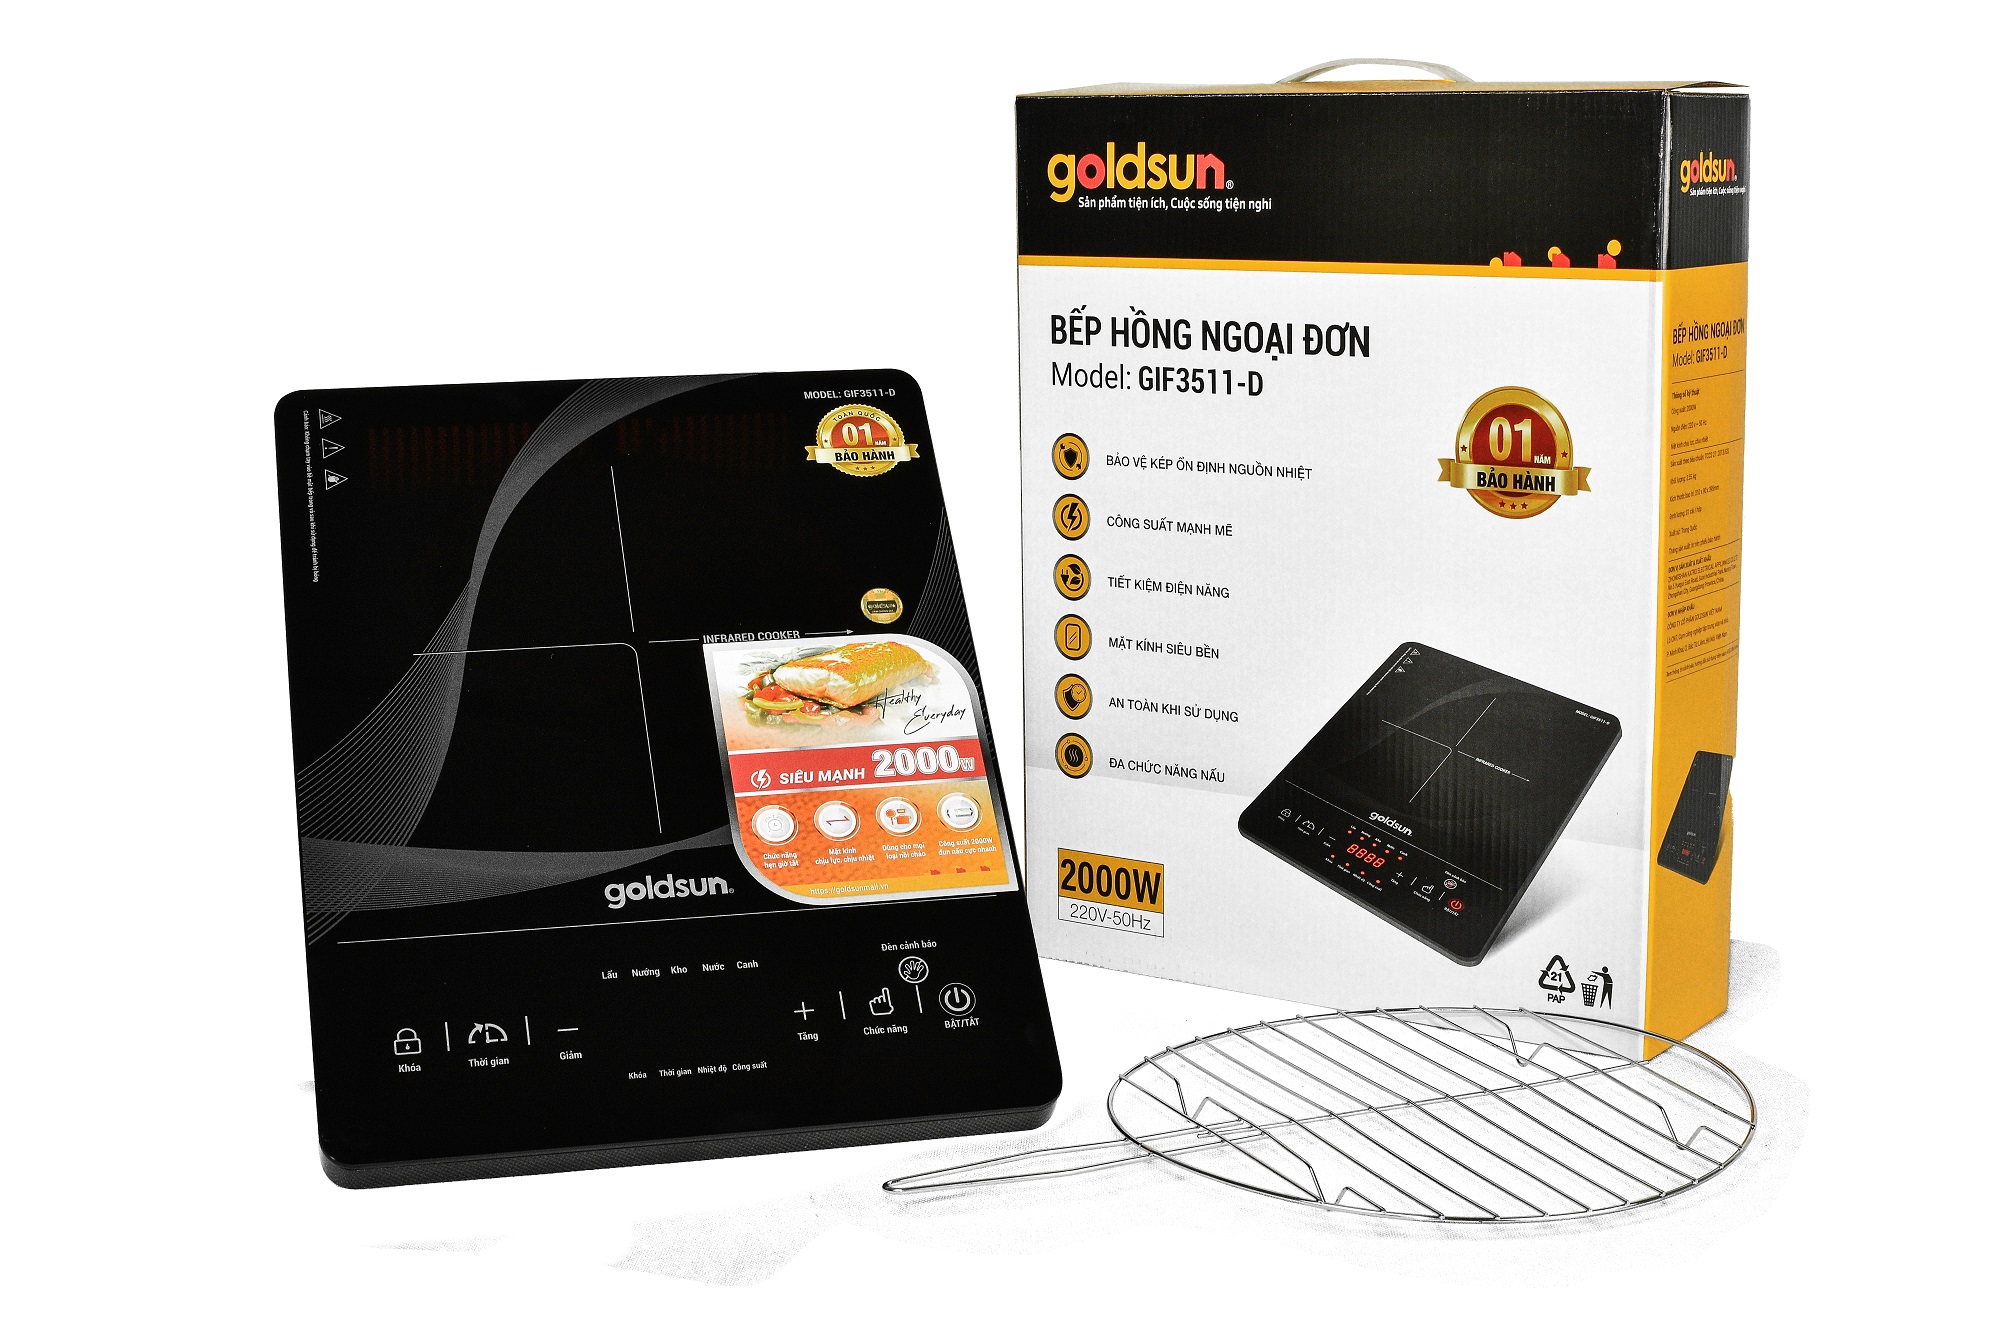 Bếp Hồng Ngoại Cảm Ứng Goldsun GIFR-T11 (2000W) - Đen